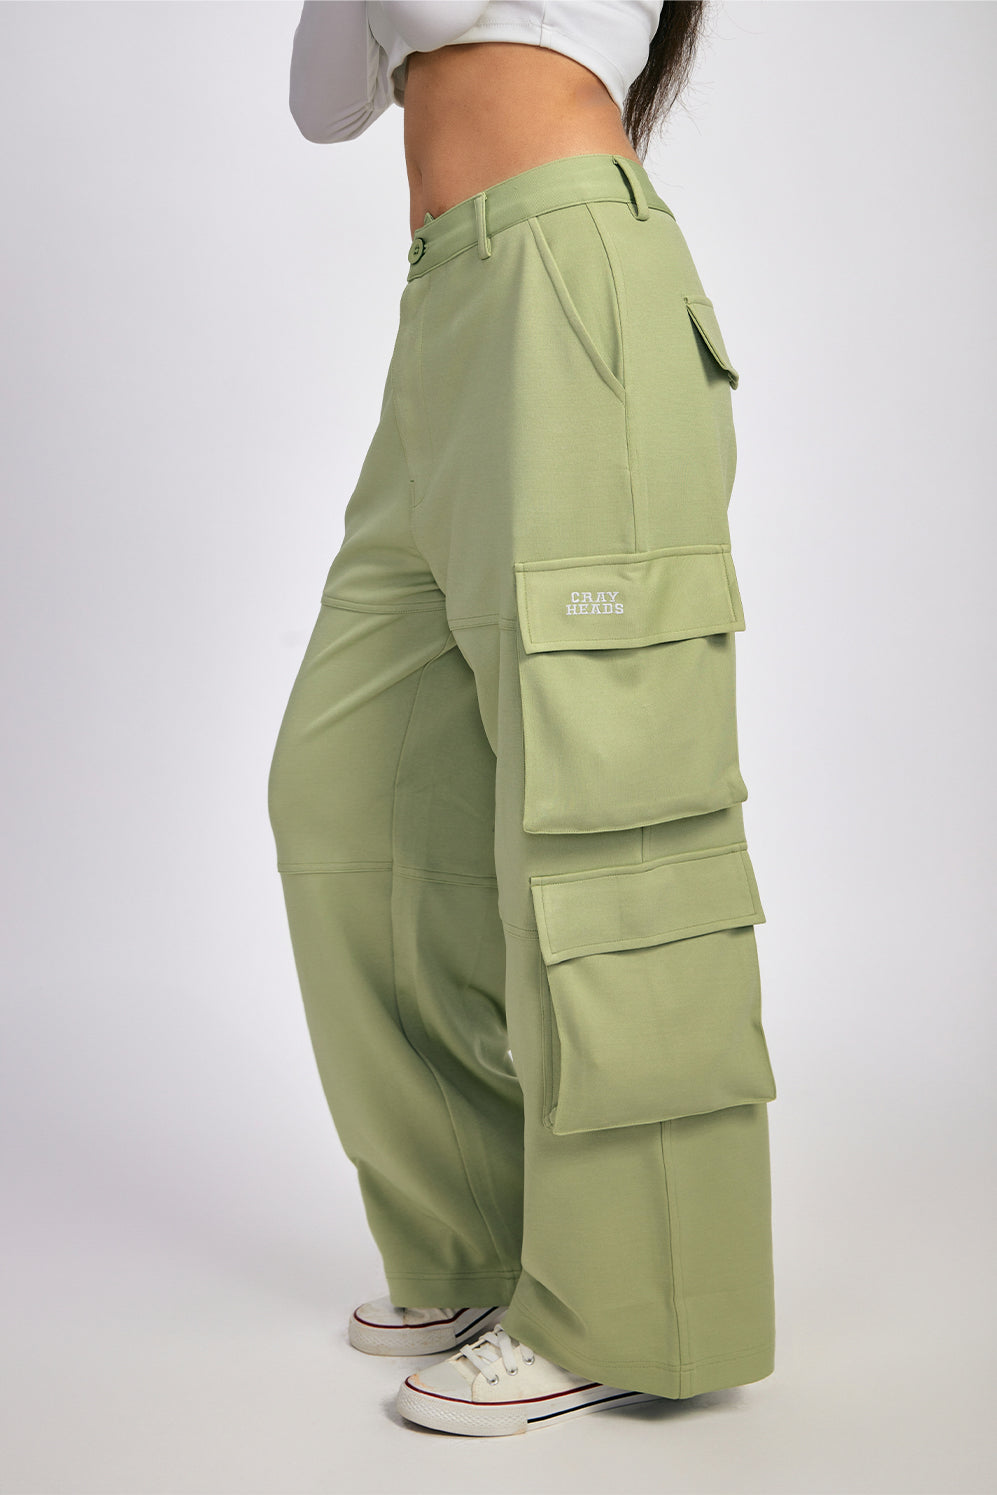 Buy Men's Sage Green Cargo Trousers Online at Bewakoof